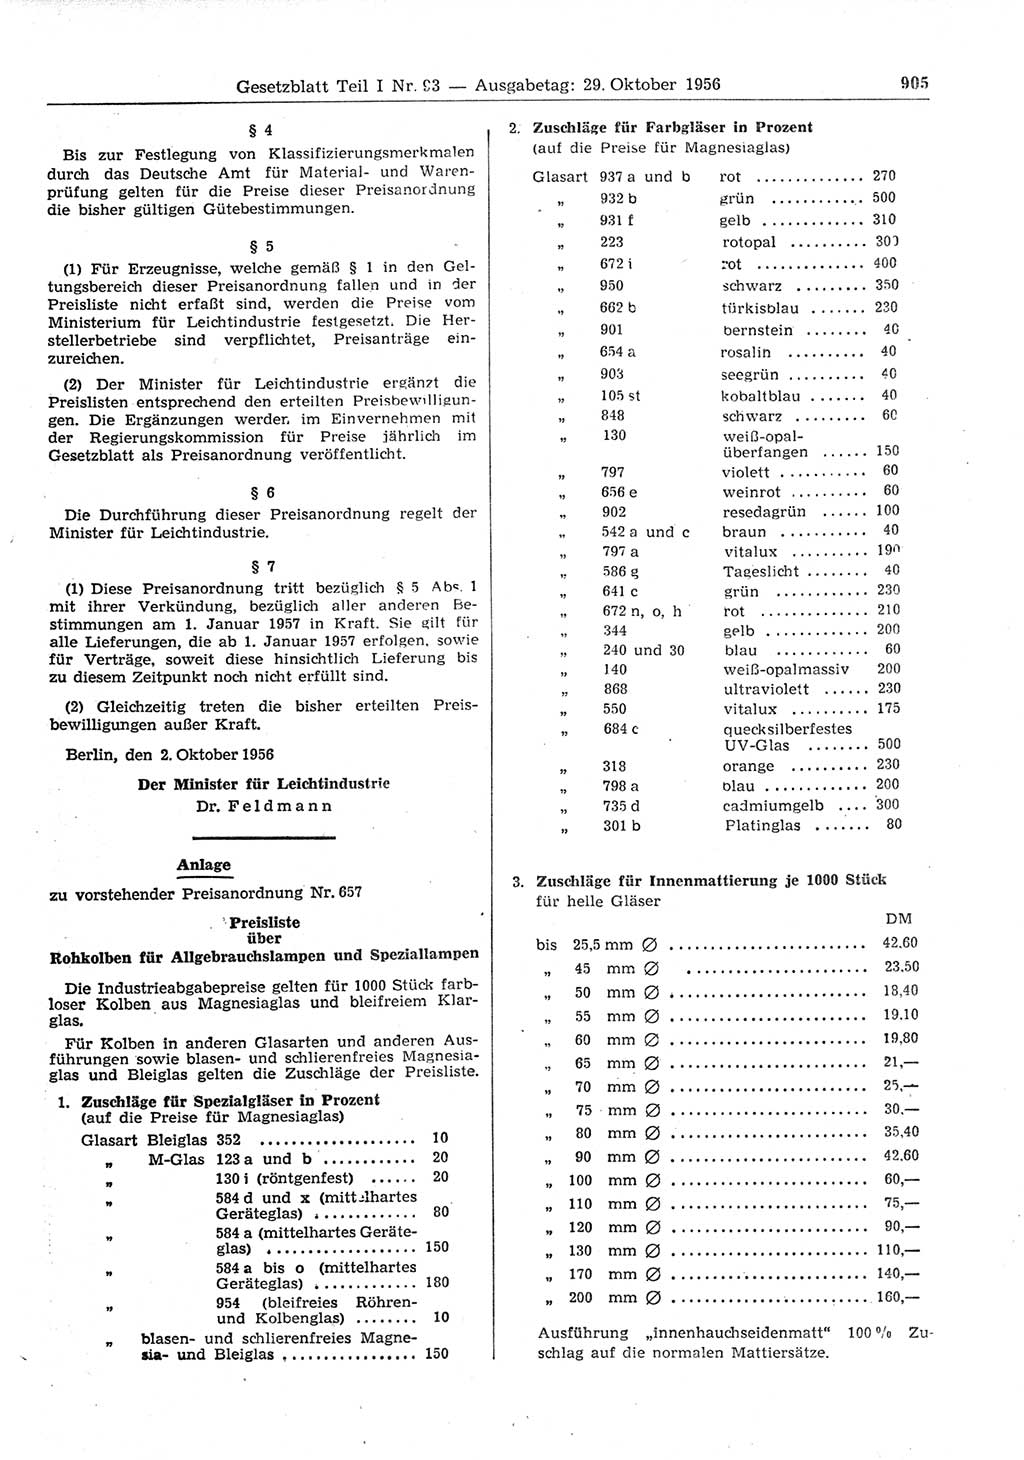 Gesetzblatt (GBl.) der Deutschen Demokratischen Republik (DDR) Teil Ⅰ 1956, Seite 905 (GBl. DDR Ⅰ 1956, S. 905)